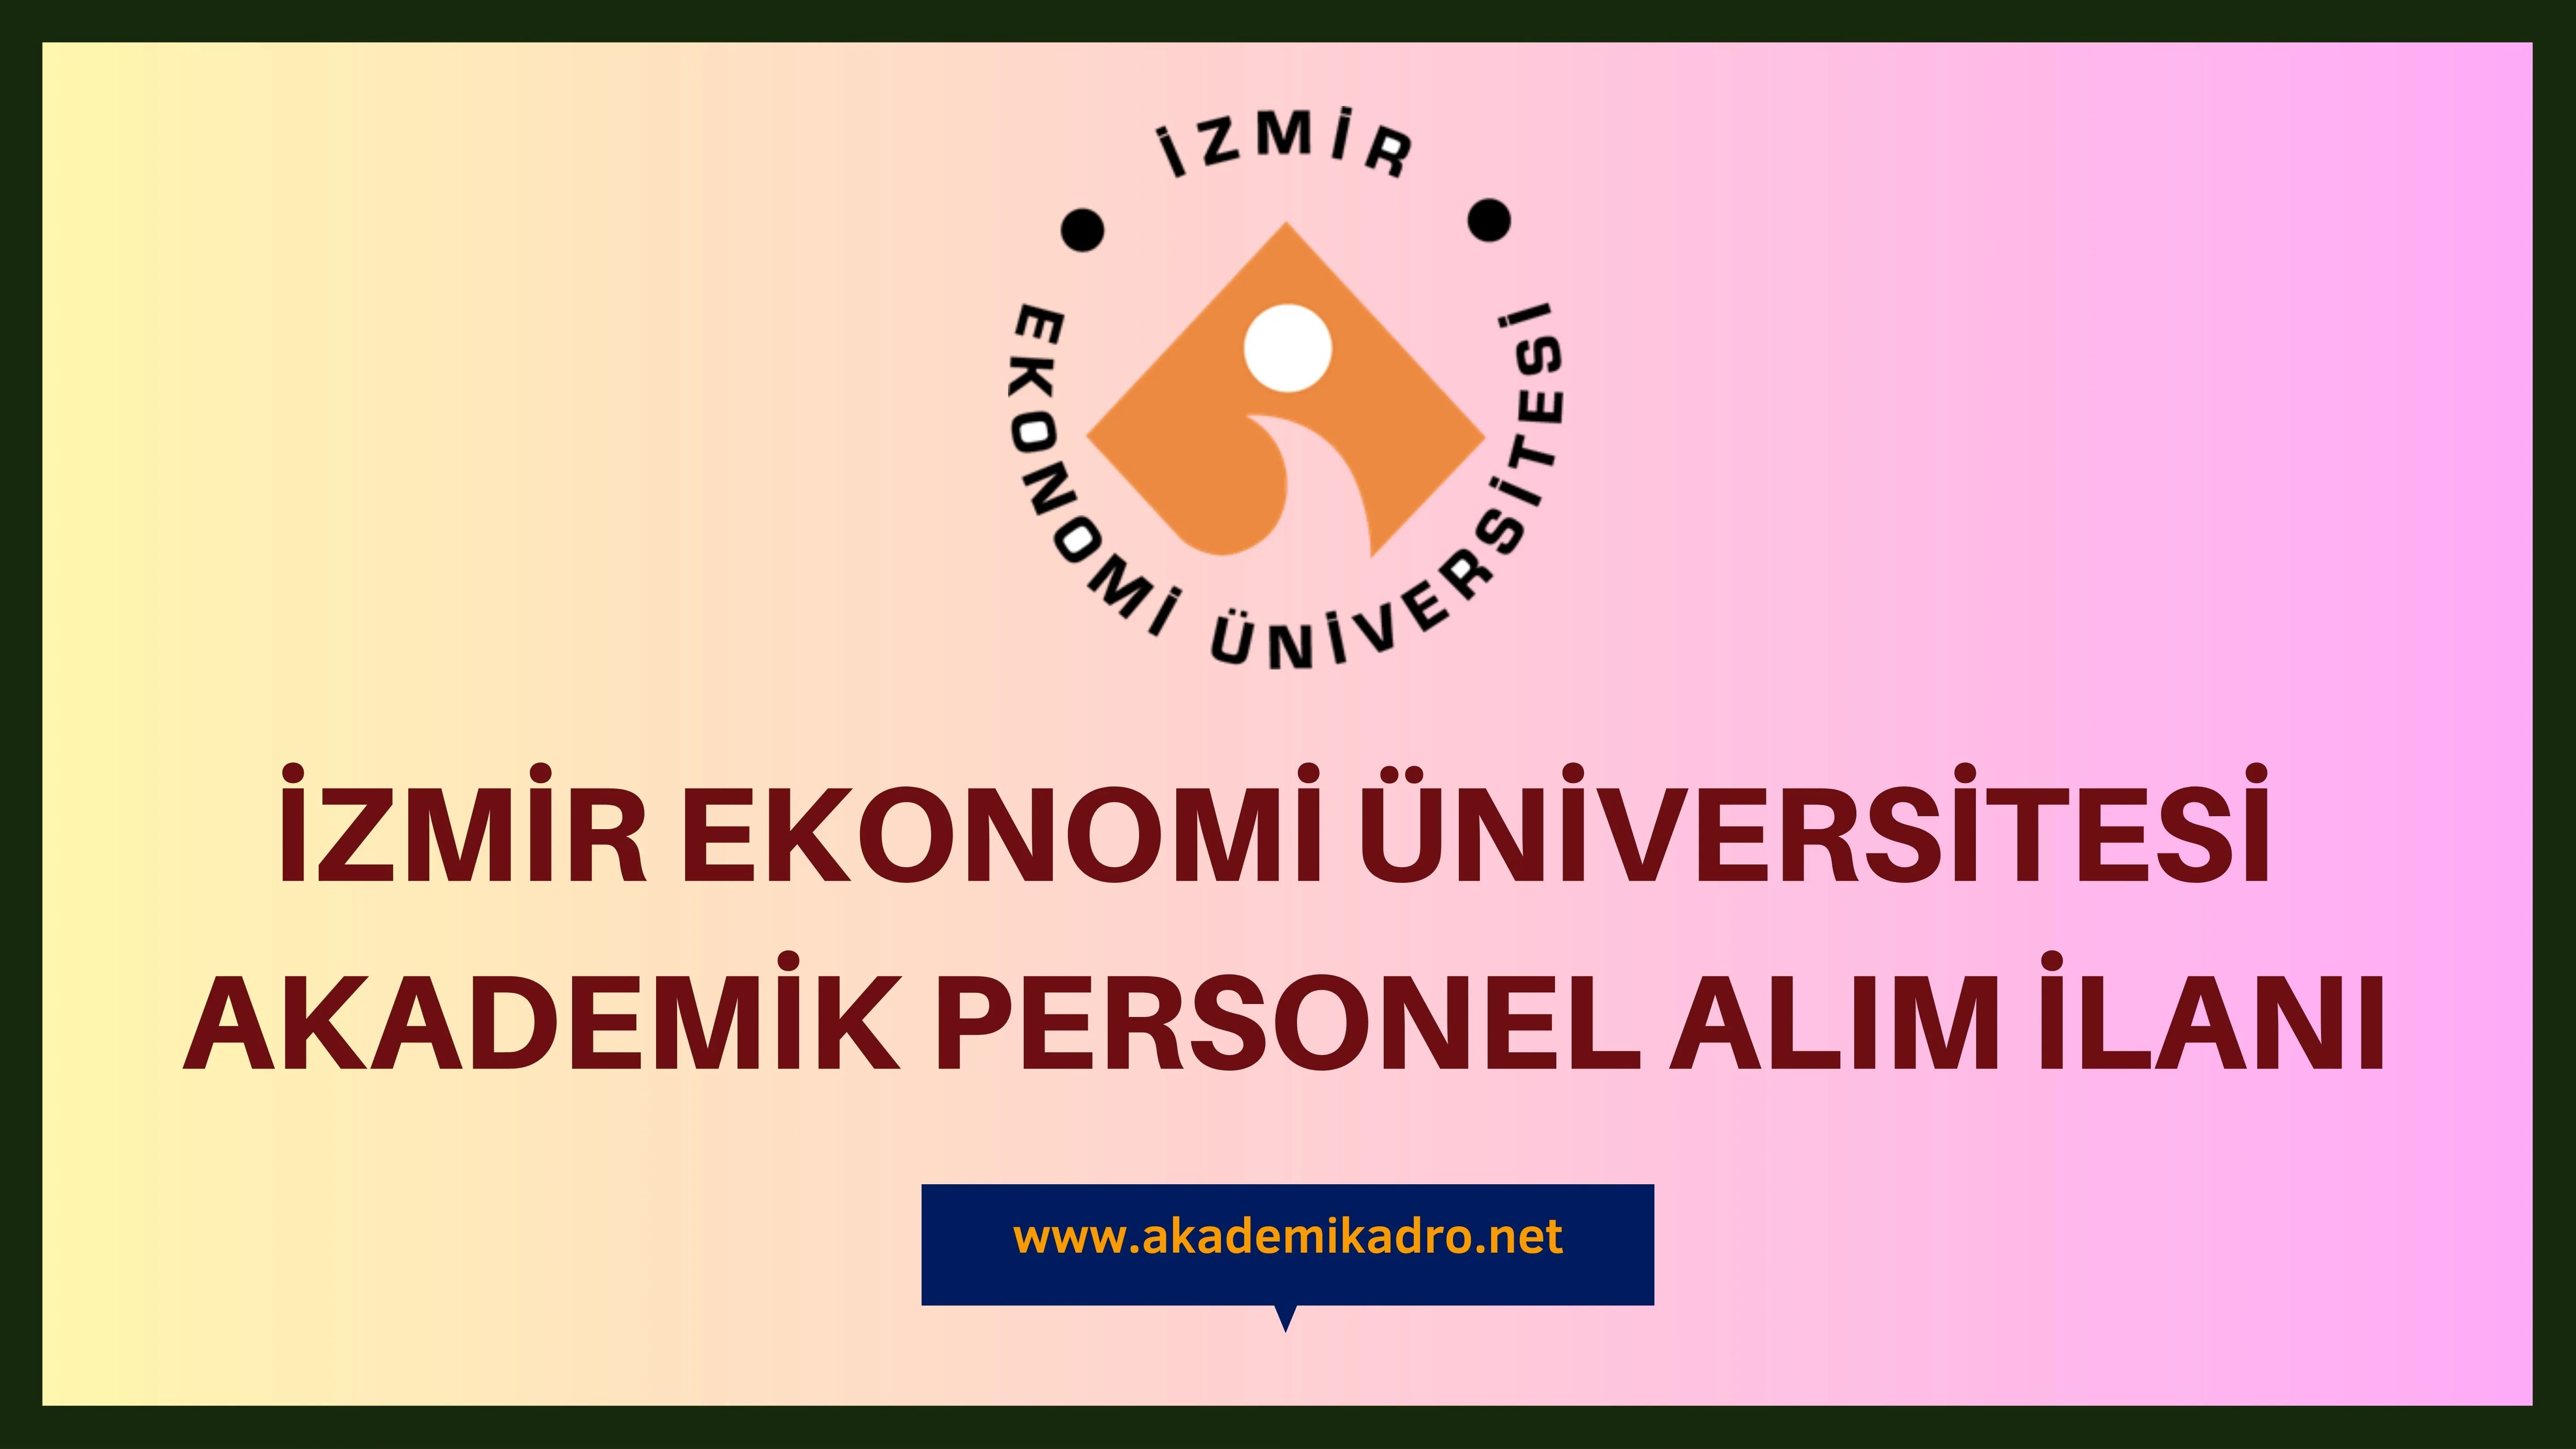 İzmir Ekonomi Üniversitesi çeşitli alanlardan 9 akademik personel alacak. Son başvuru tarihi 10 Temmuz 2023.